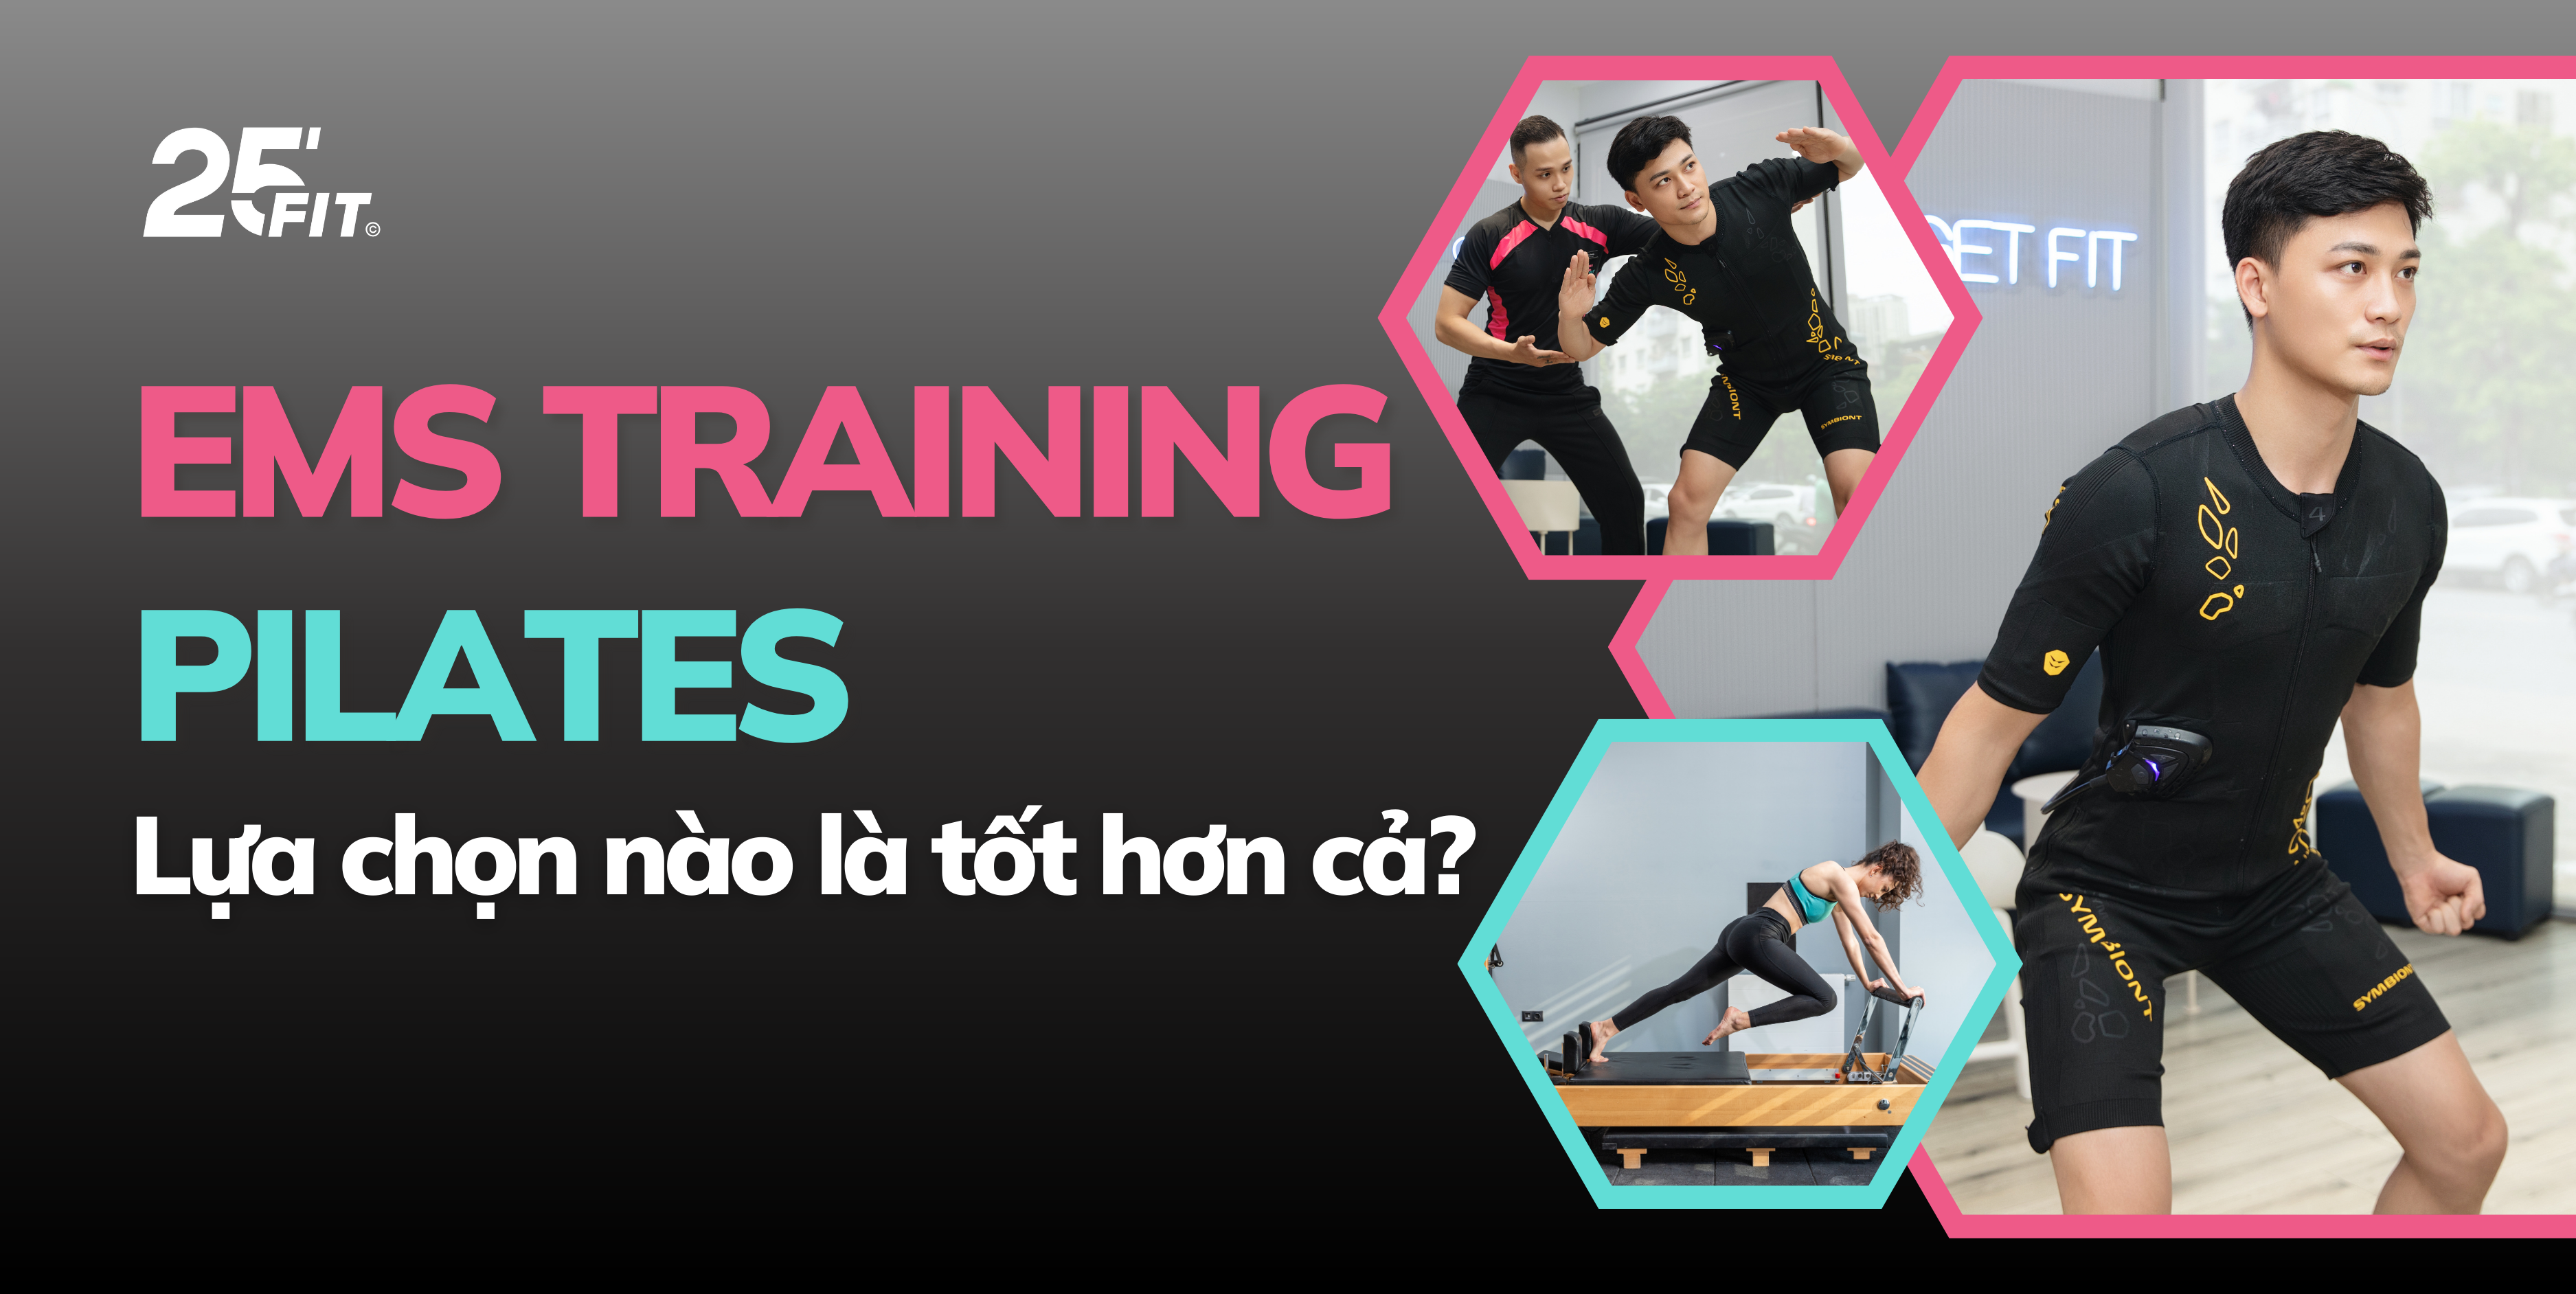 EMS Training và Pilates: Sự lựa chọn nào là phù hợp với bạn?